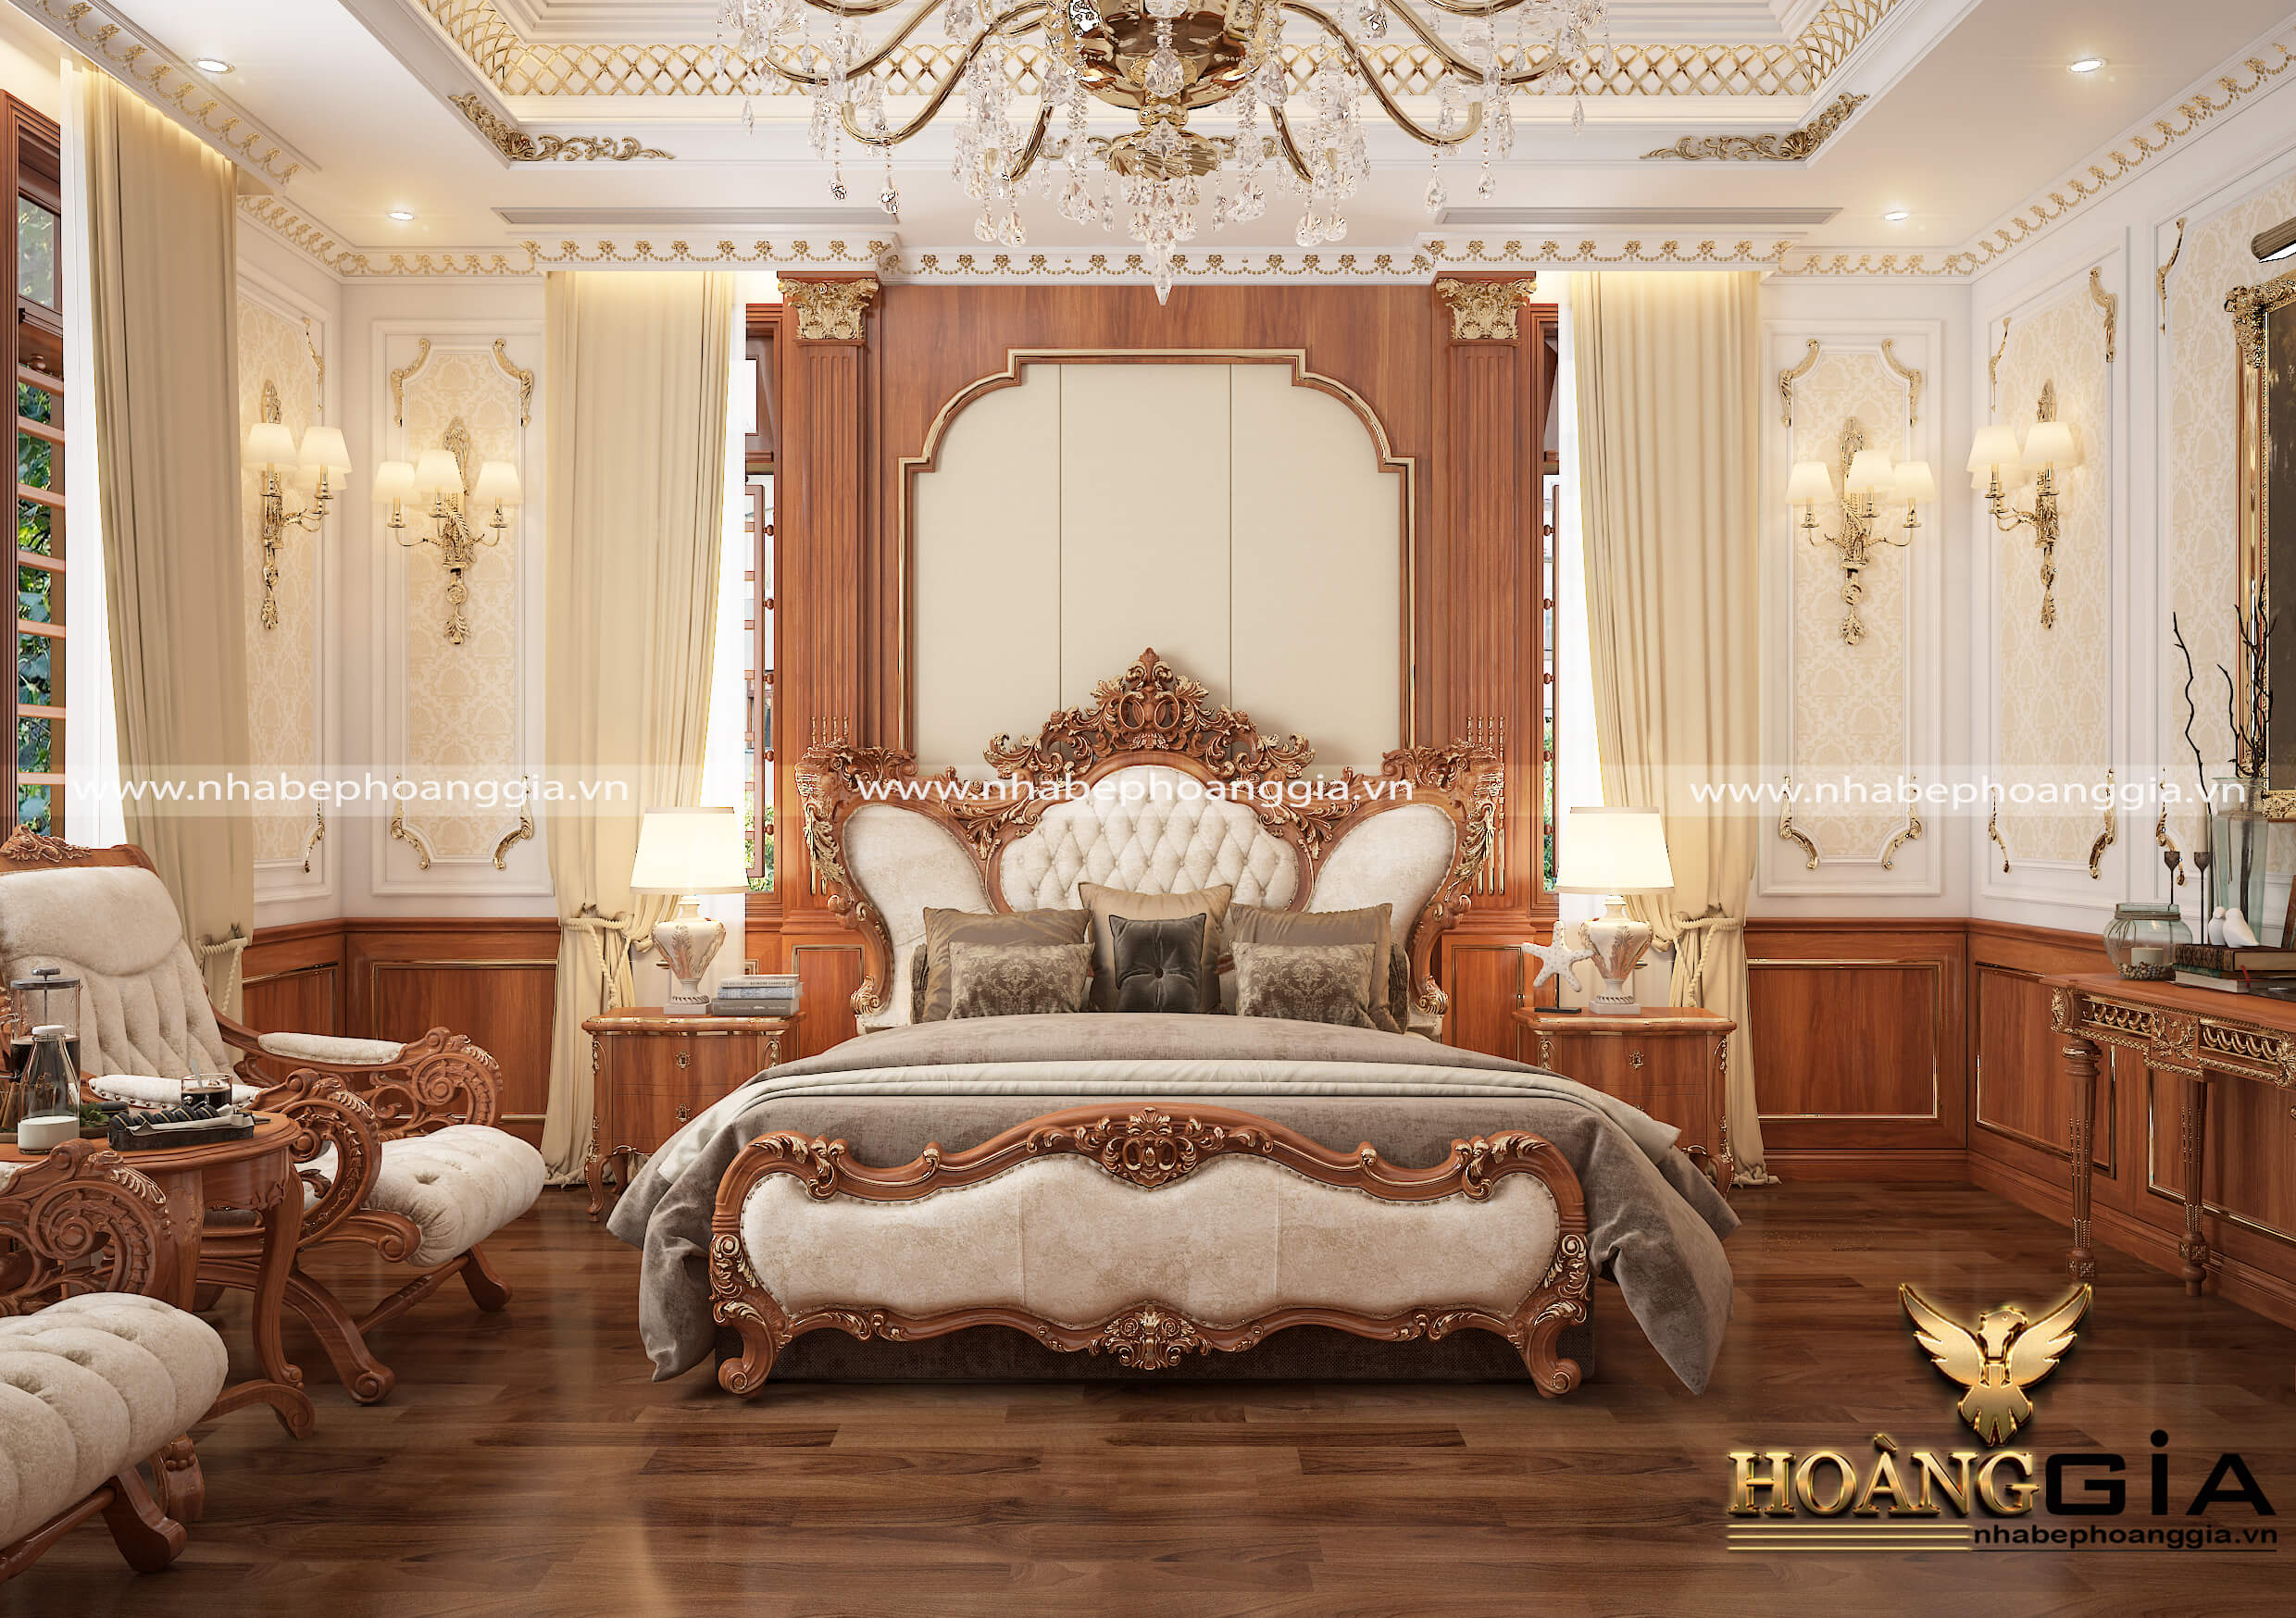 Mẫu phòng ngủ đẹp phong cách tân cổ điển sang trọng cho nhà biệt thự